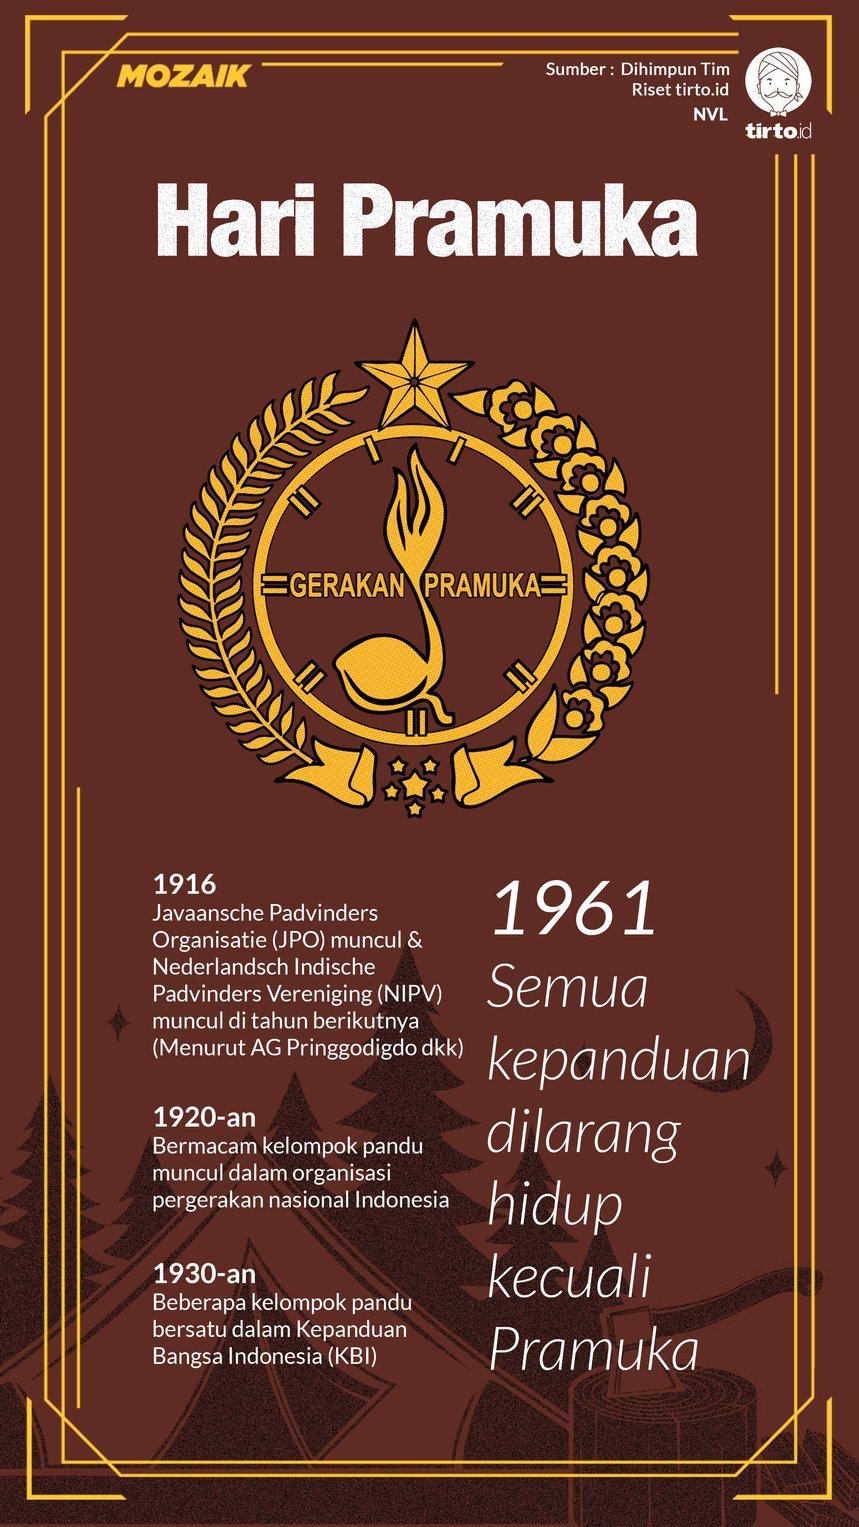 Sejarah Pramuka Indonesia Dan Dunia Secara Lengkap Pramuka Update - Infografik Pramuka Mozaik Nauval